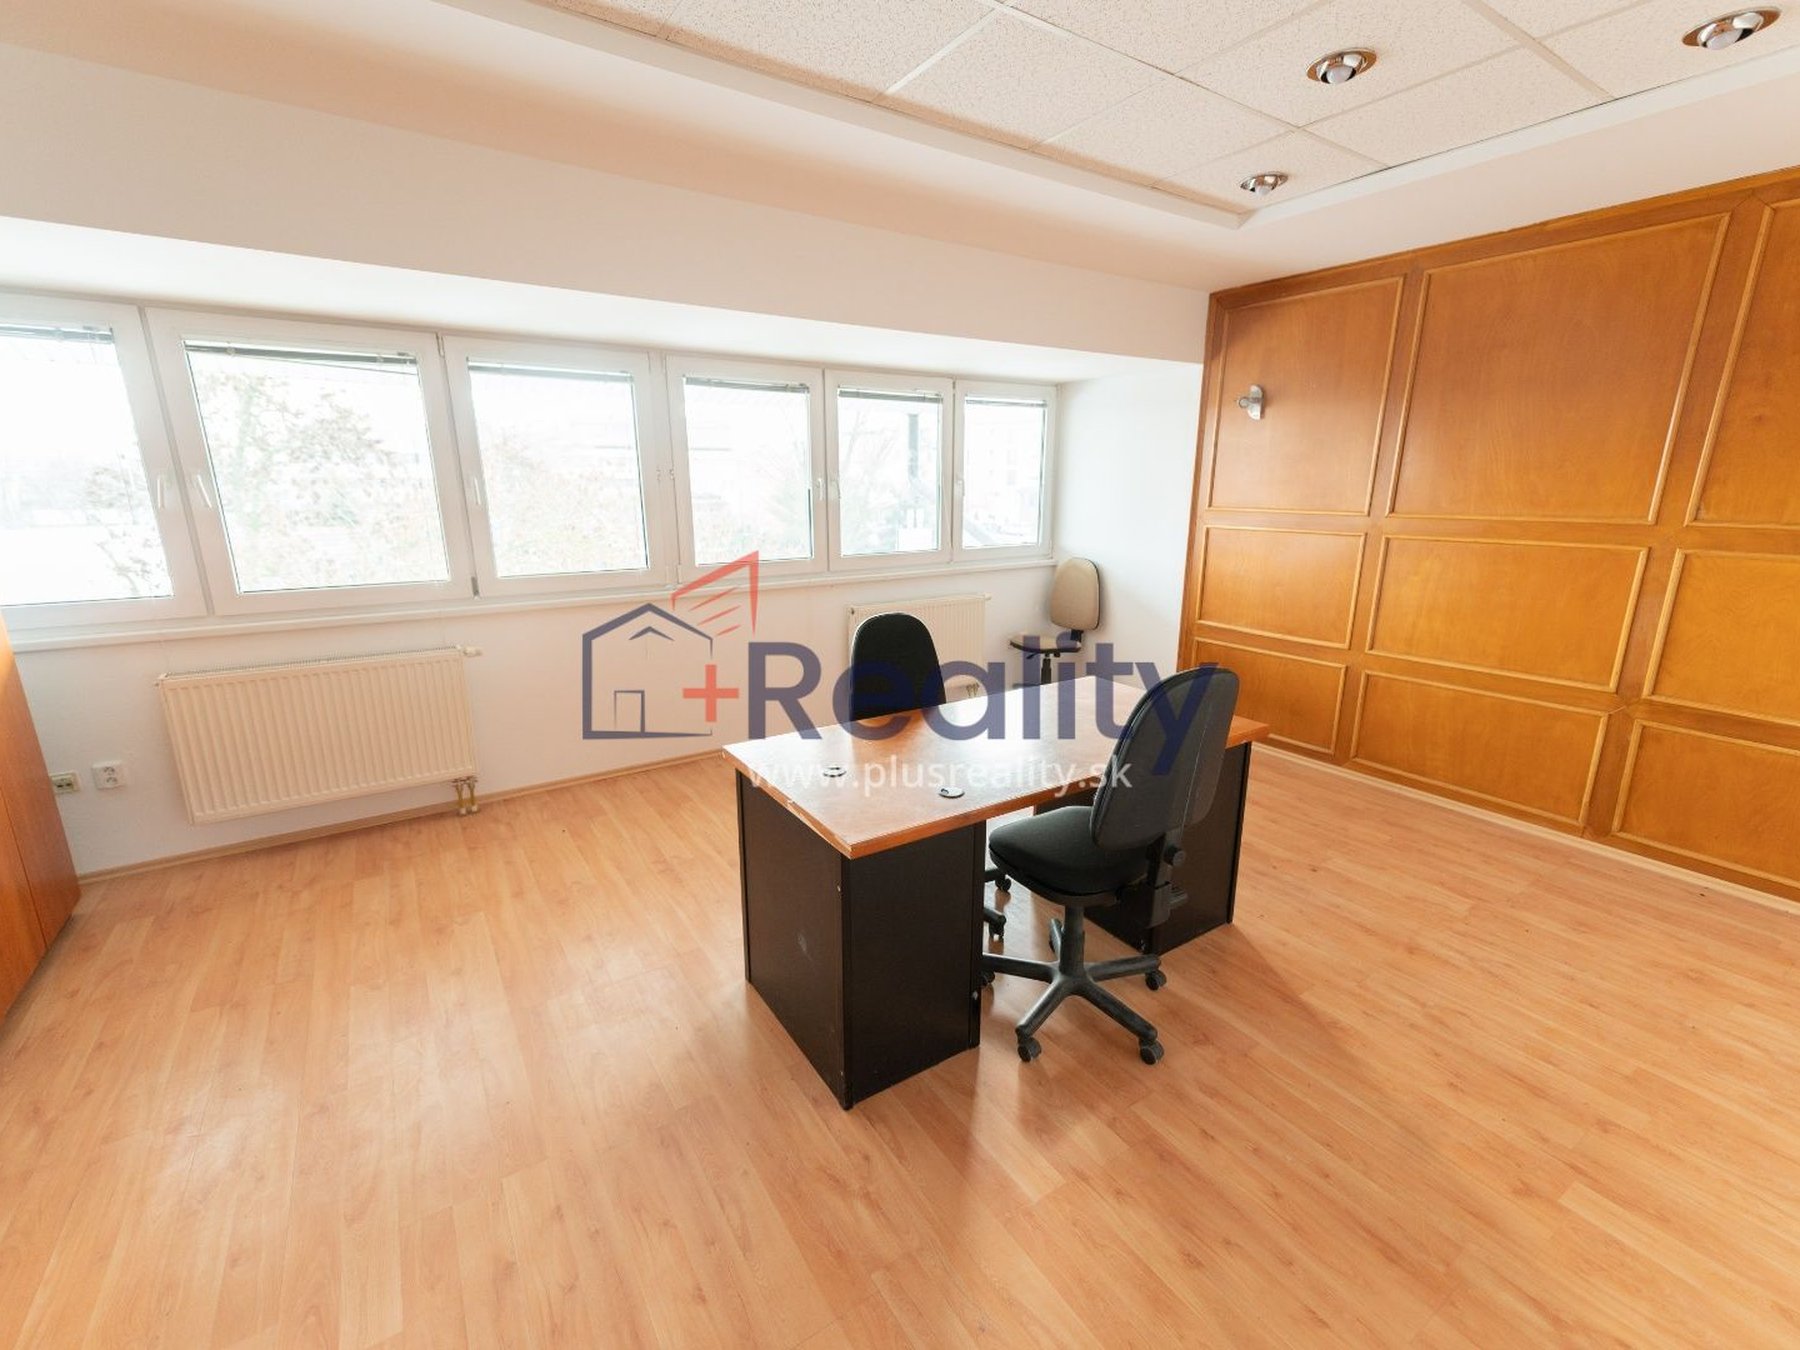 Kancelárie, administratívne priestory 212 m² , Kompletná rekonštrukcia